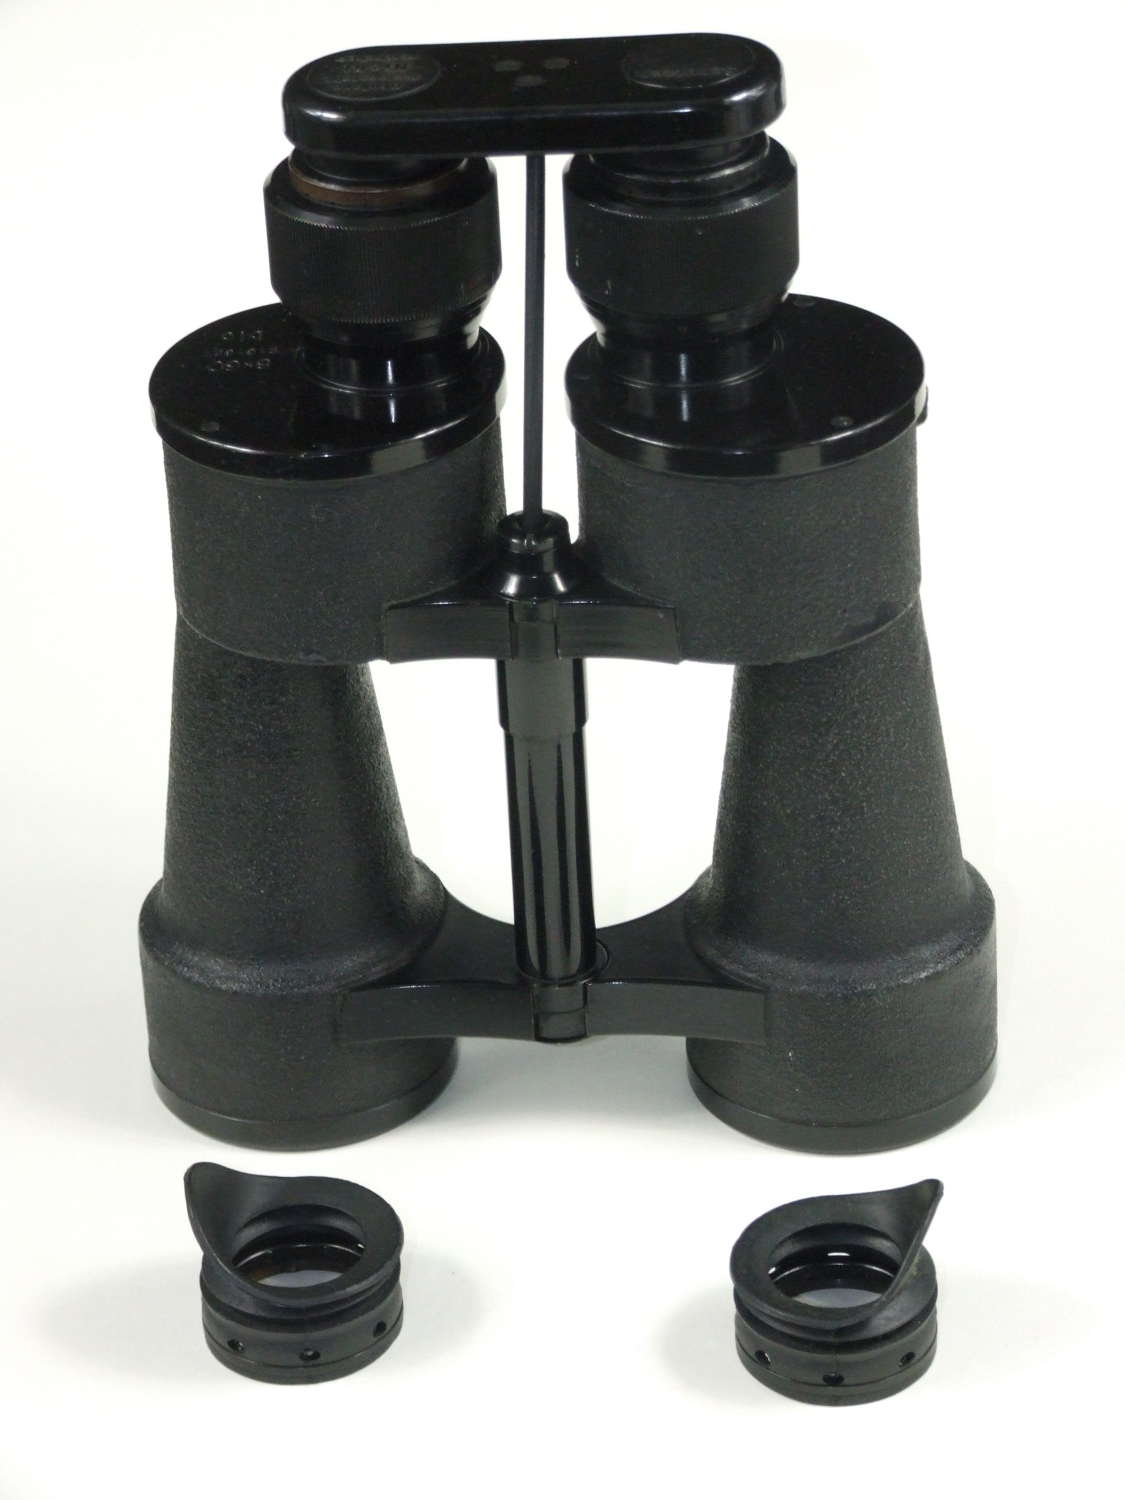 Zeiss Kriegsmarine 8x60 Binoculars